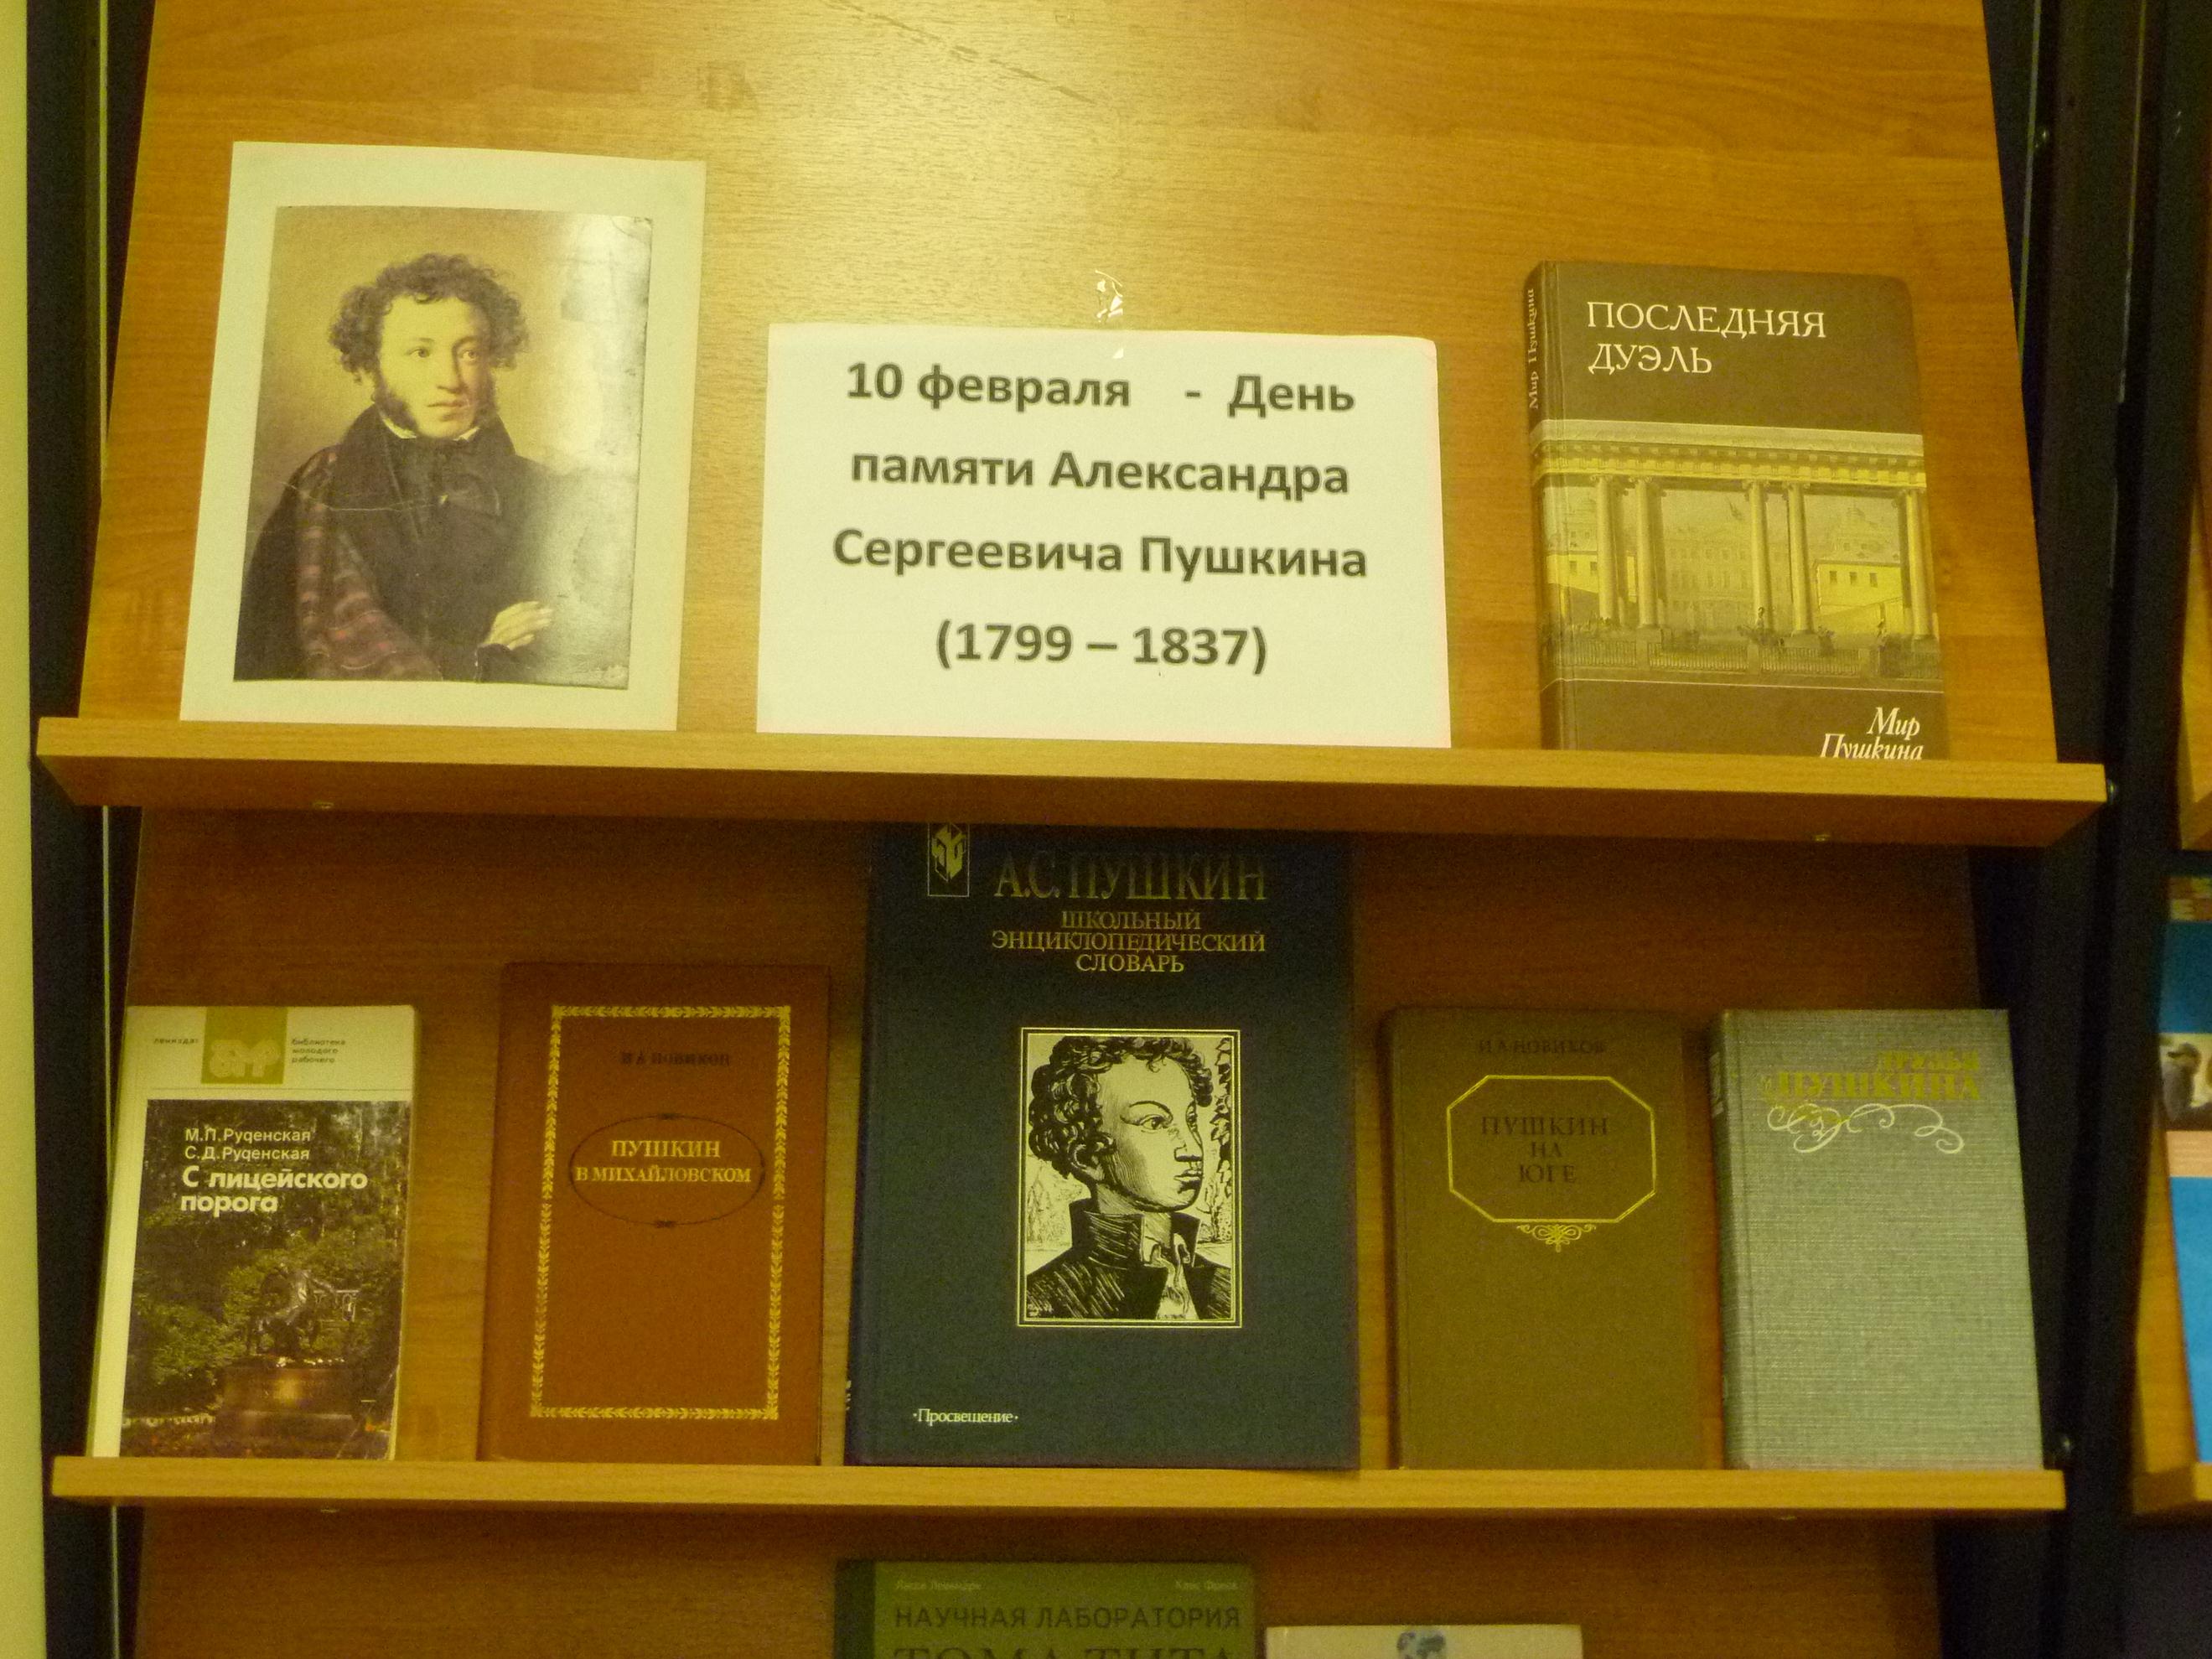 Пушкин книжная выставка в библиотеке день памяти